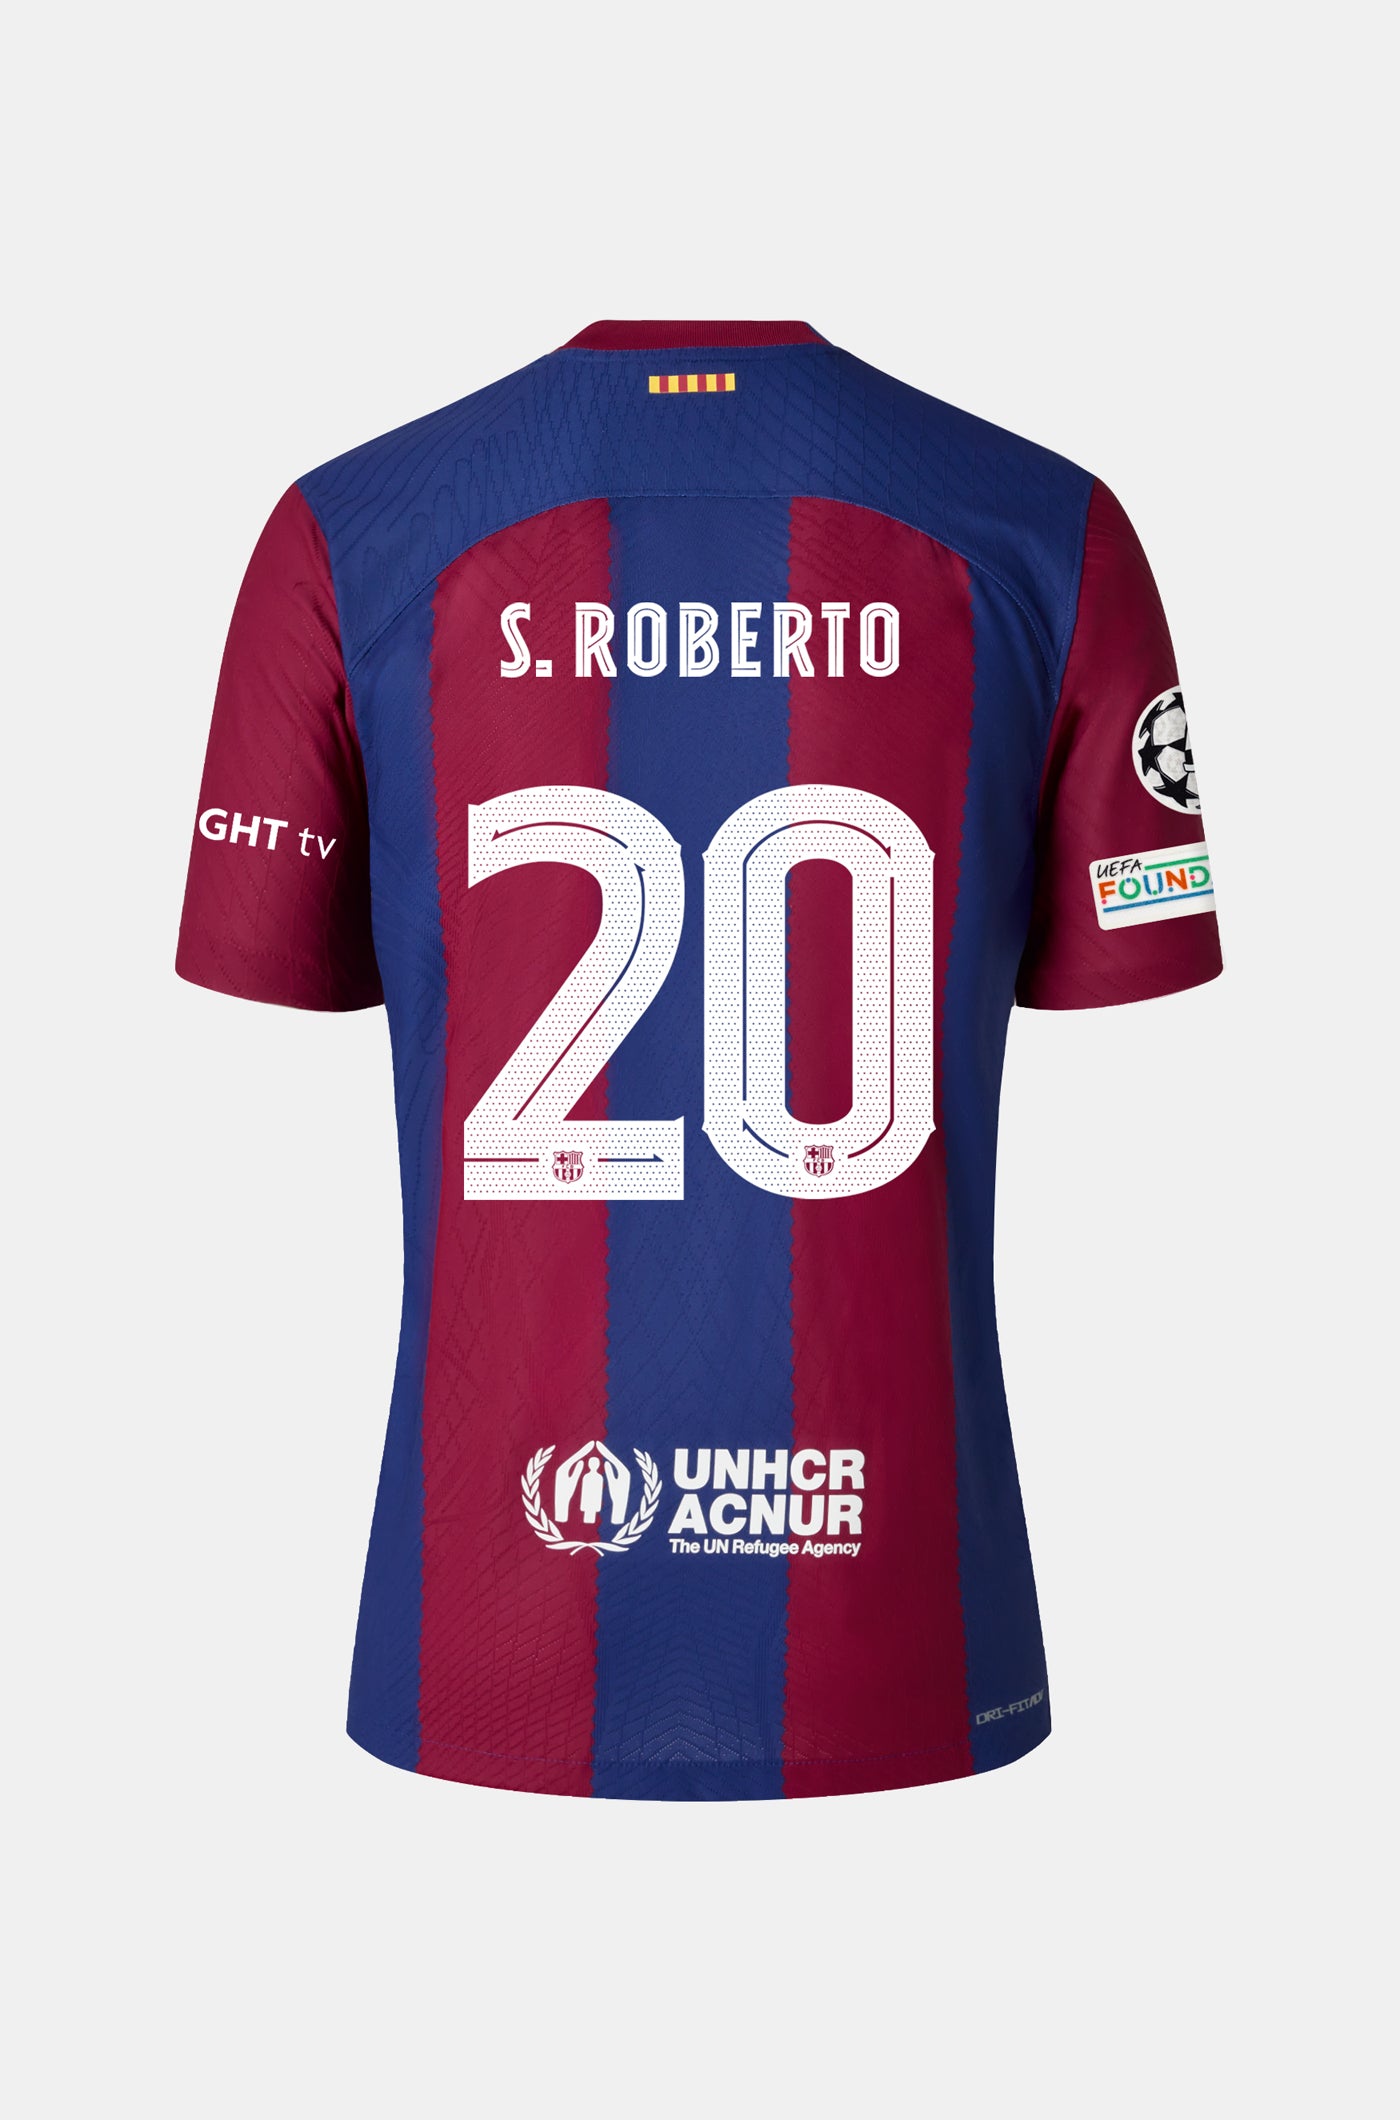 UCL FC Barcelona Heimtrikot 23/24 Player Edition - S. ROBERTO